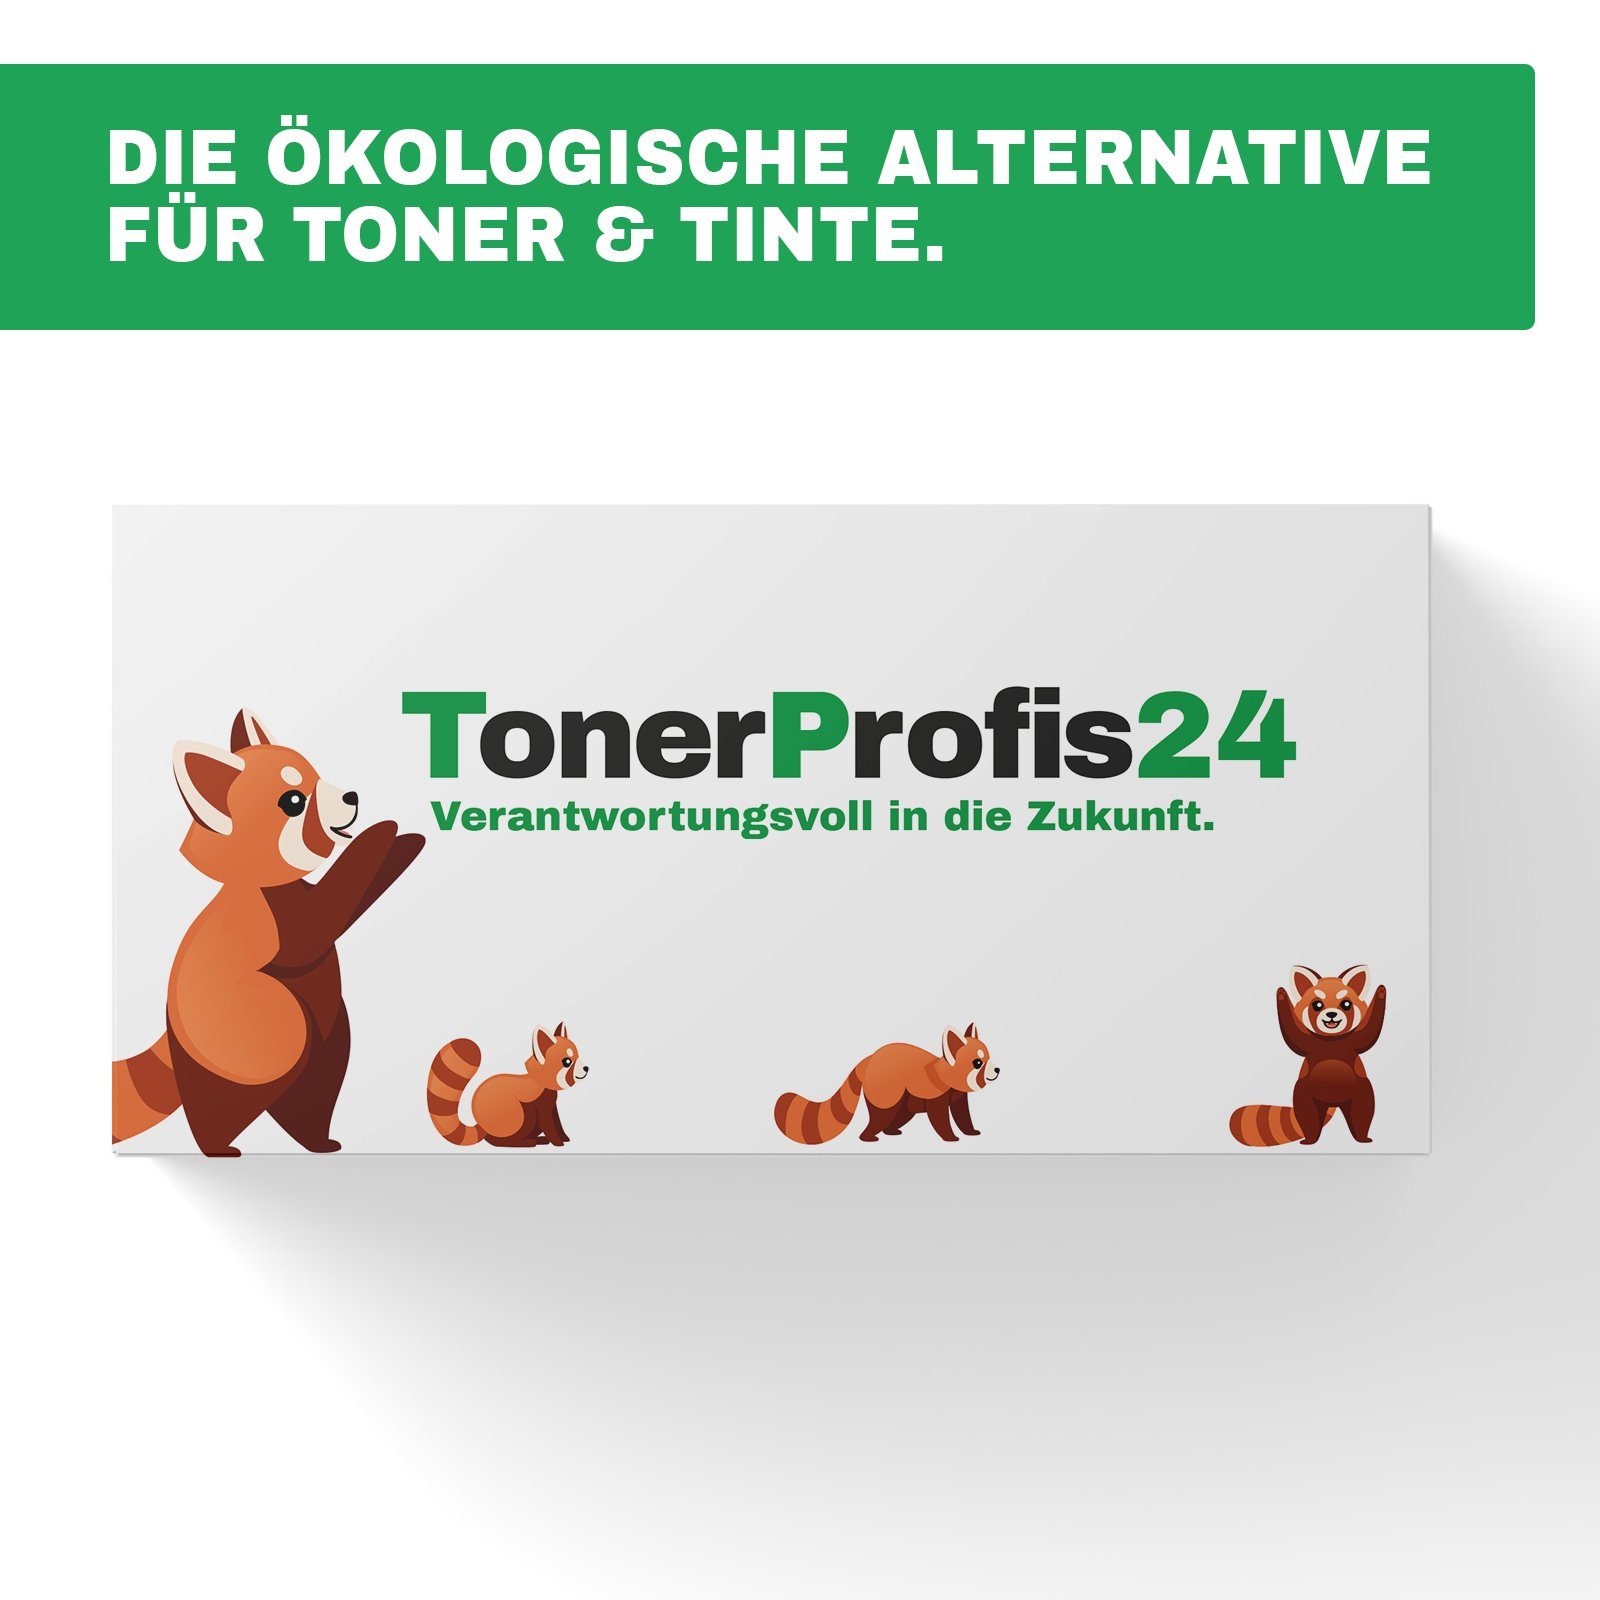 Tonerkartusche ReFill Toner TonerProfis24 ersetzt 593-10929 black / F901R, Dell *